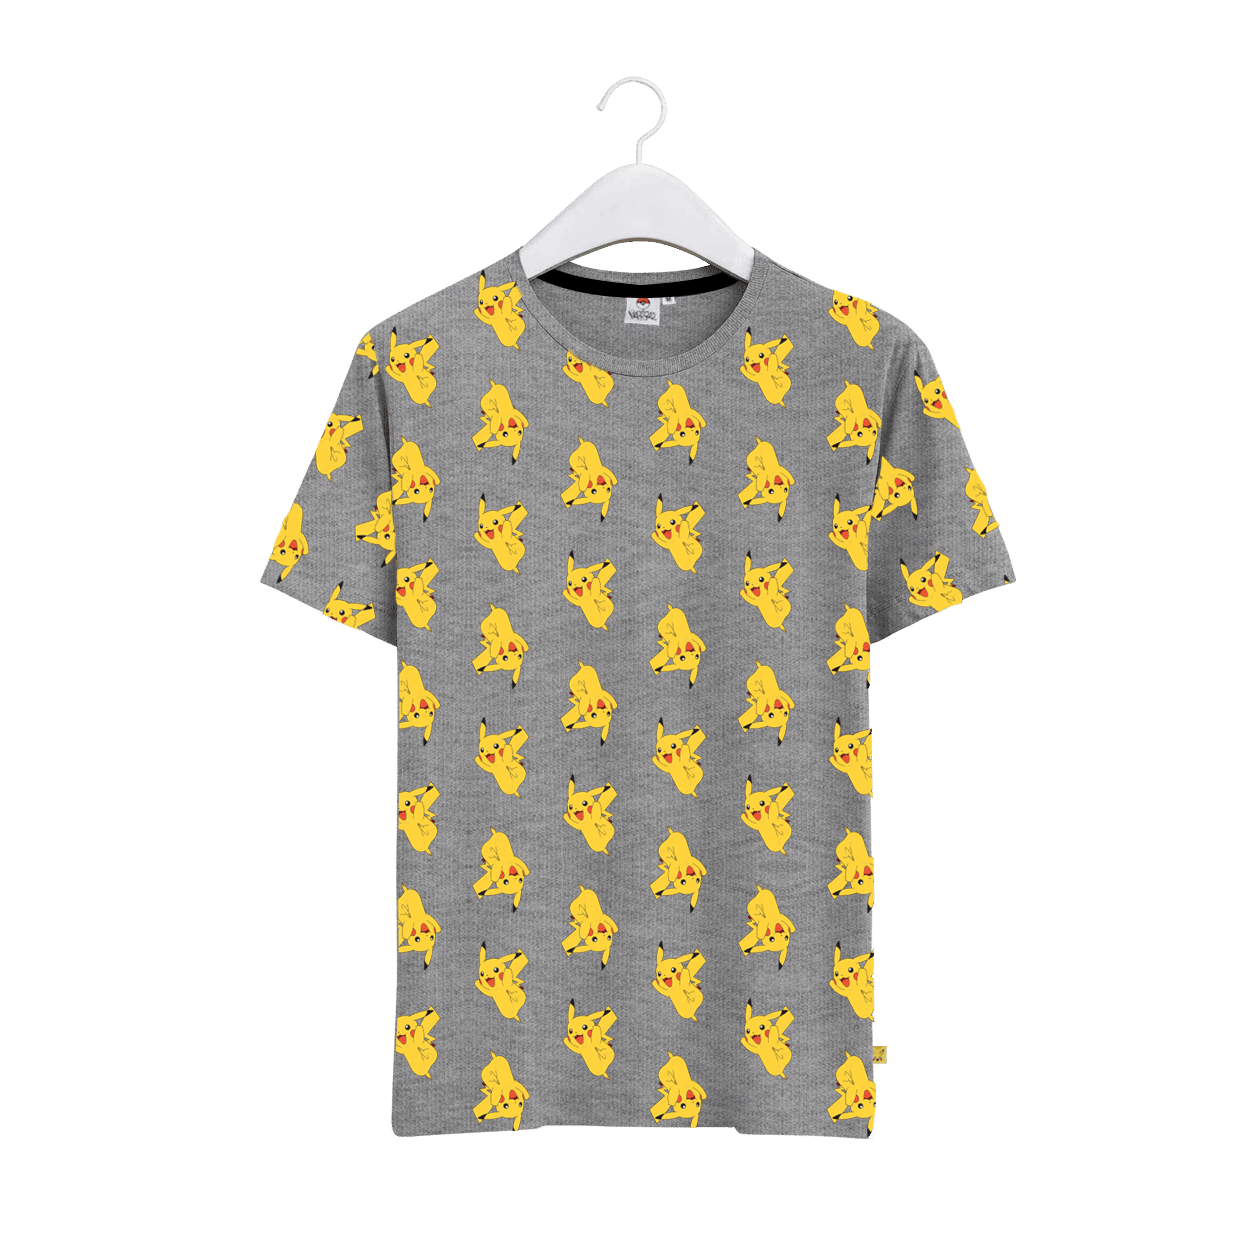 Pokémon Men Graphic T-Shirt I COMMON SENSE